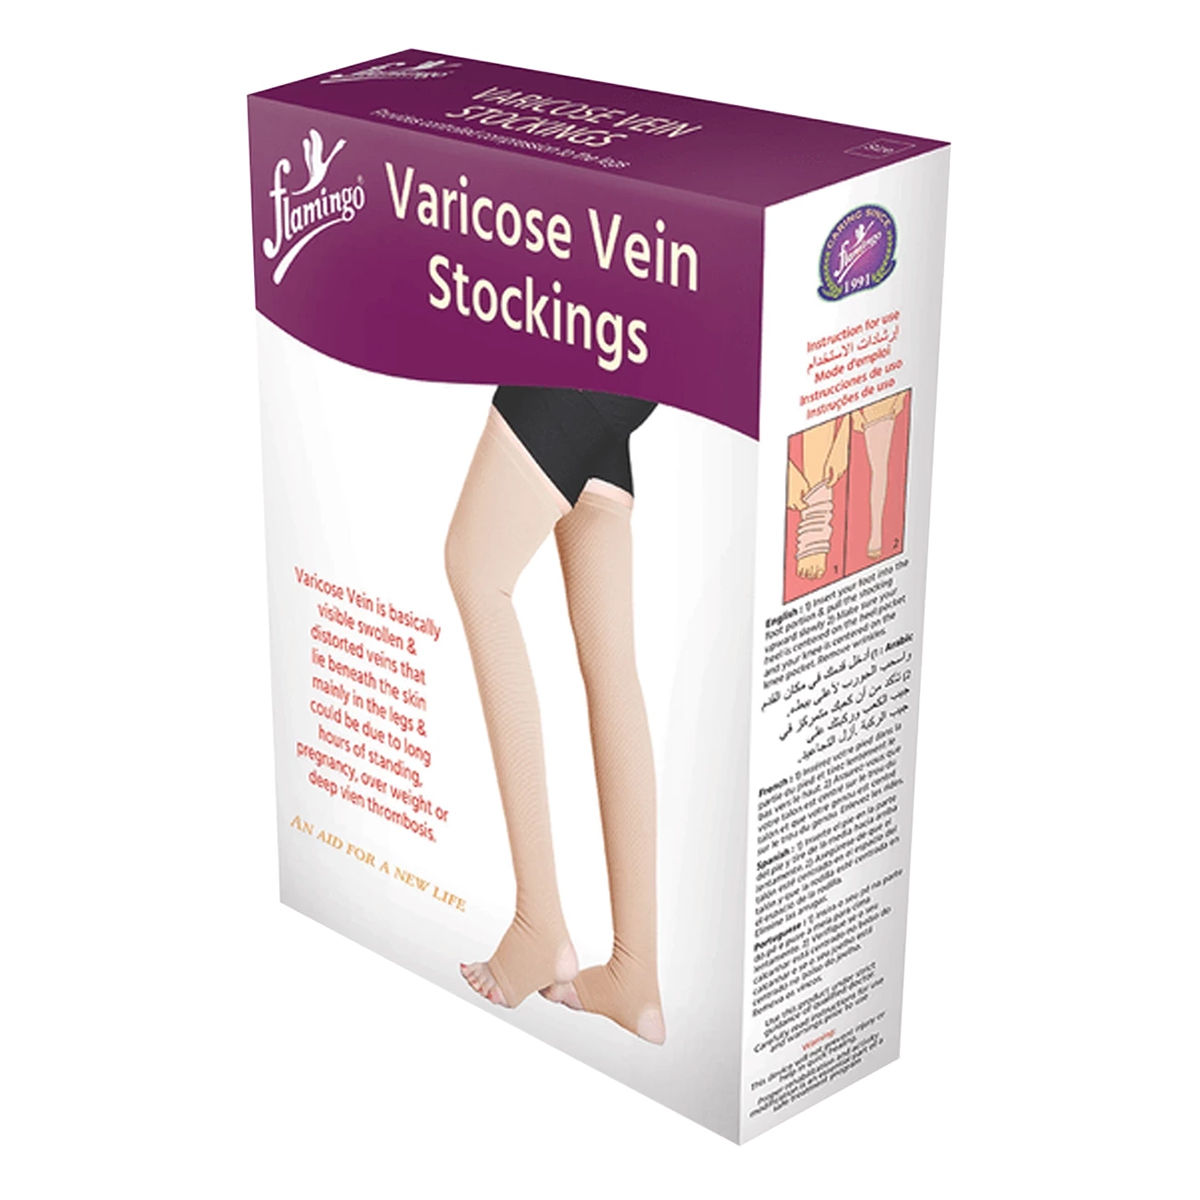 Flamingo Varicose Vein Stockings XXL, 1 Pair Price, Uses, Side